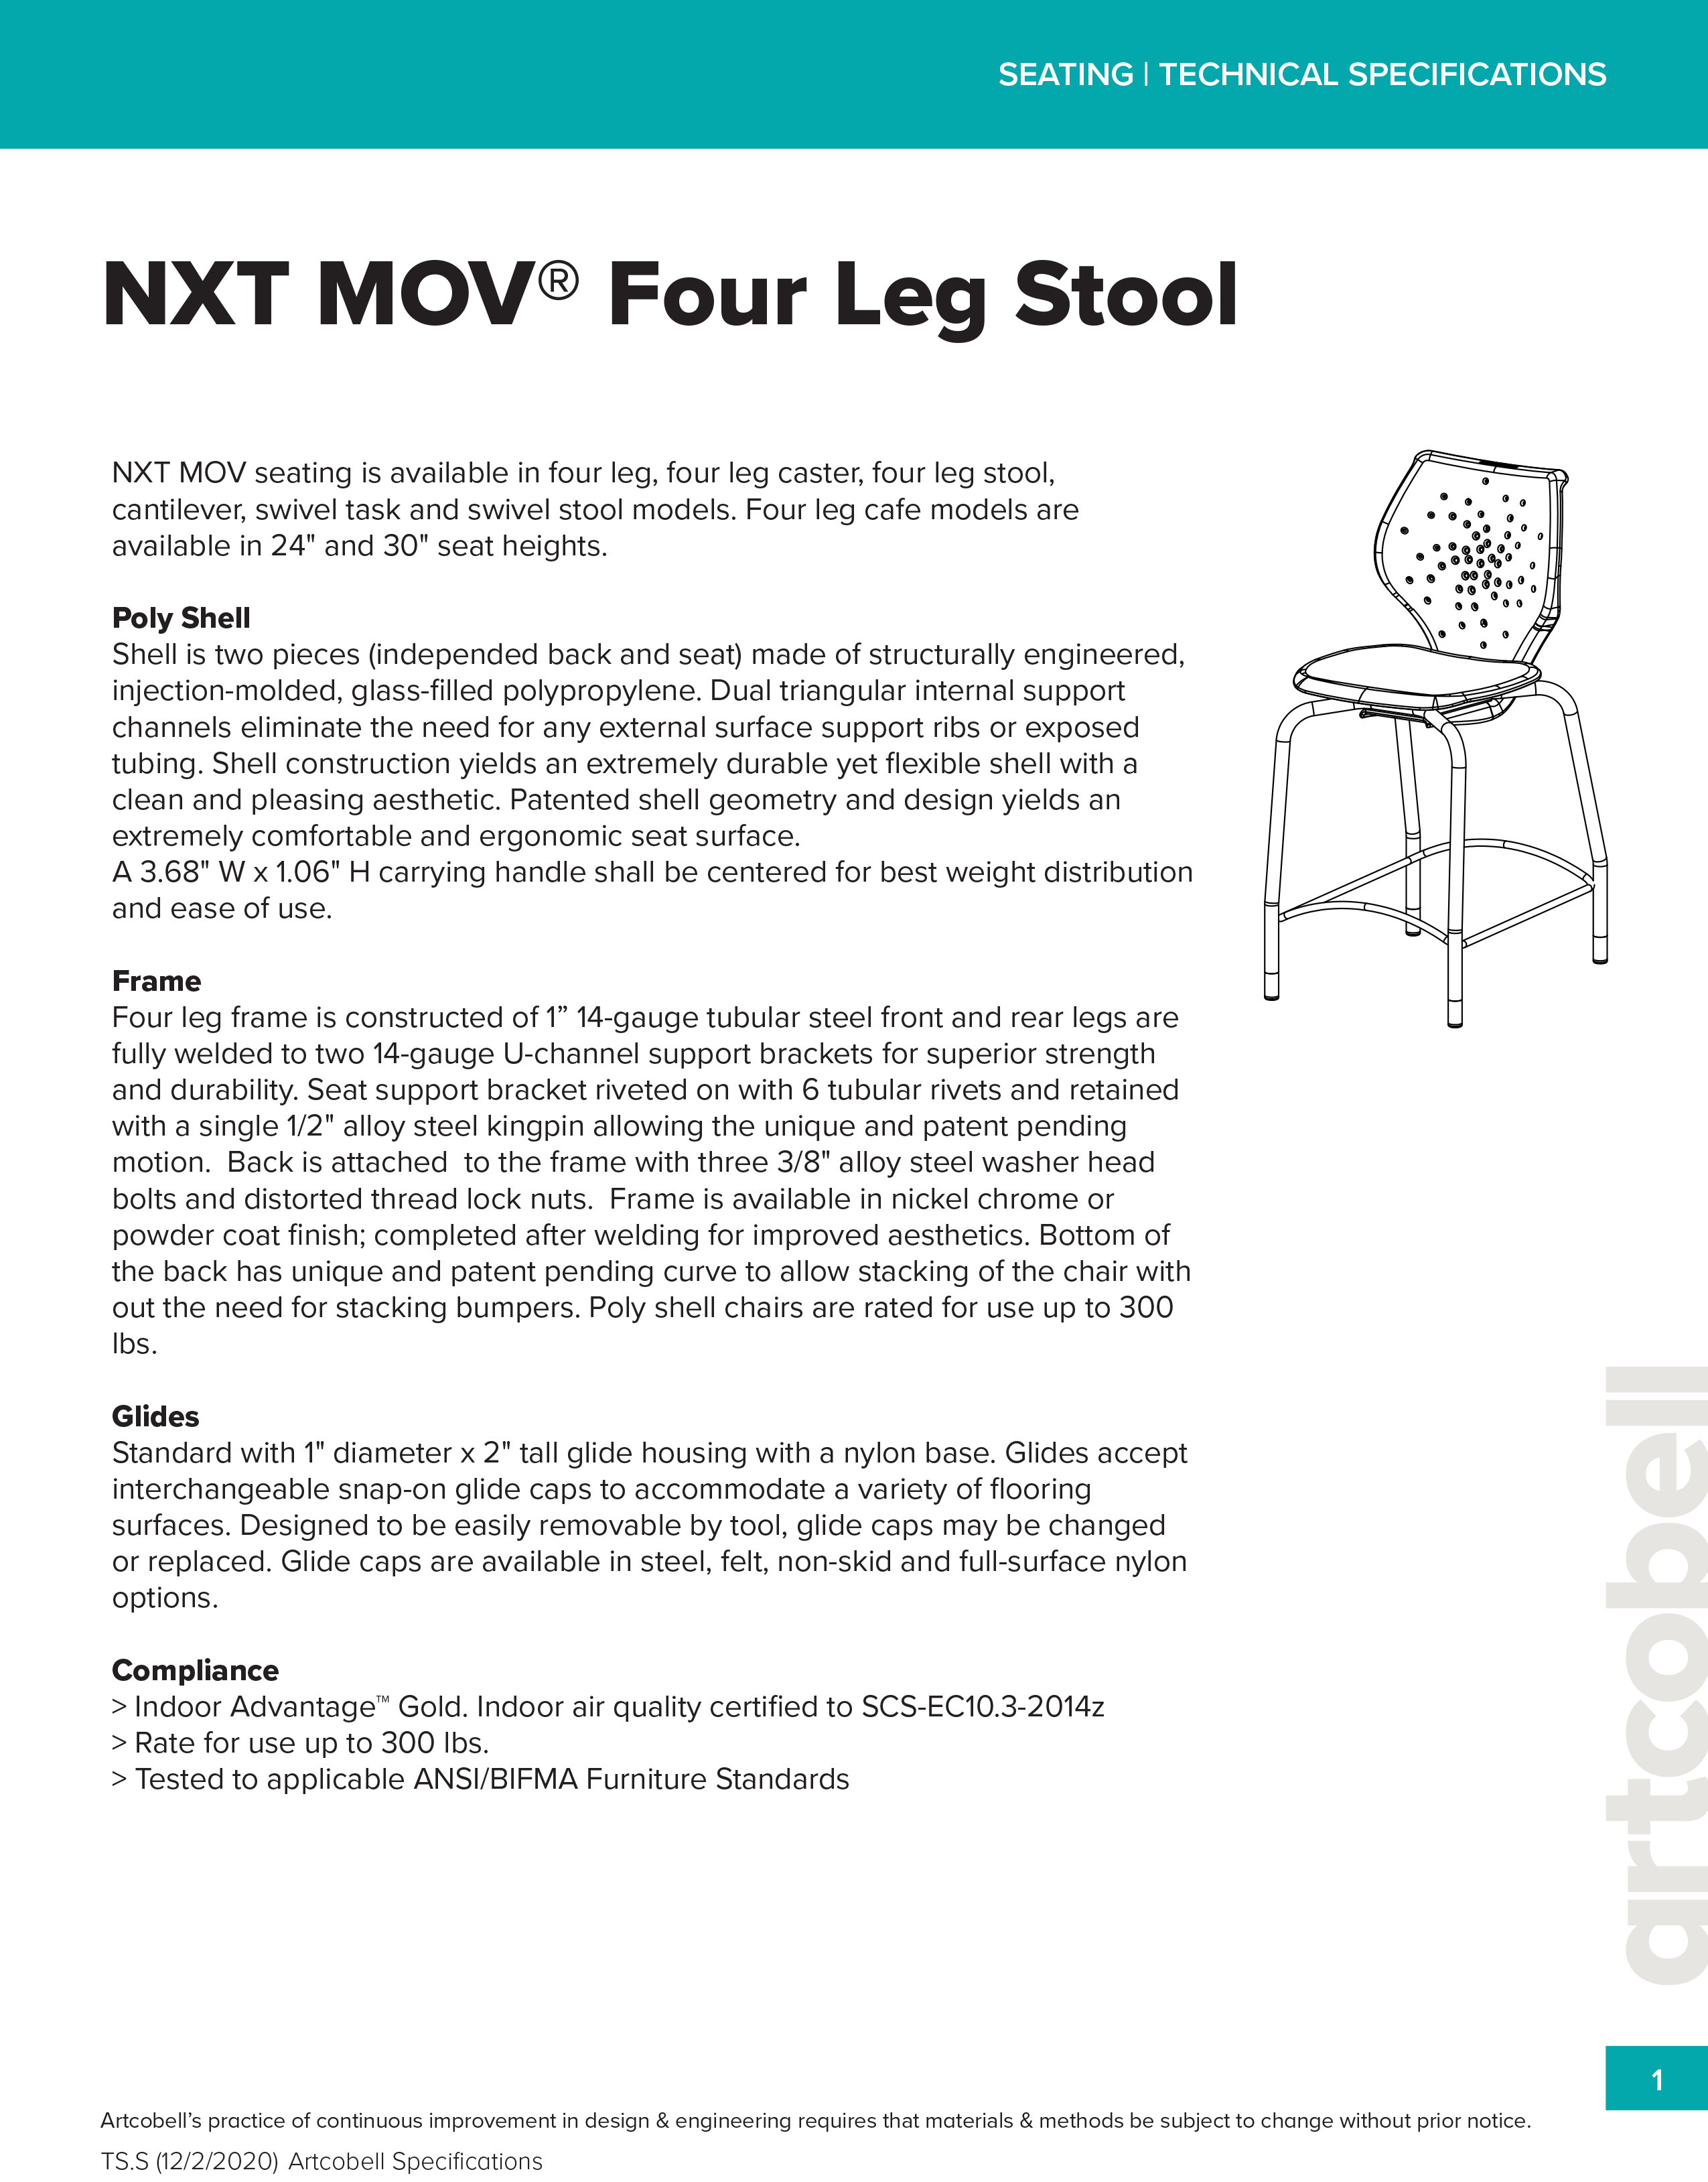 SeatingSpecifications_NXTMOV_FourLegStool